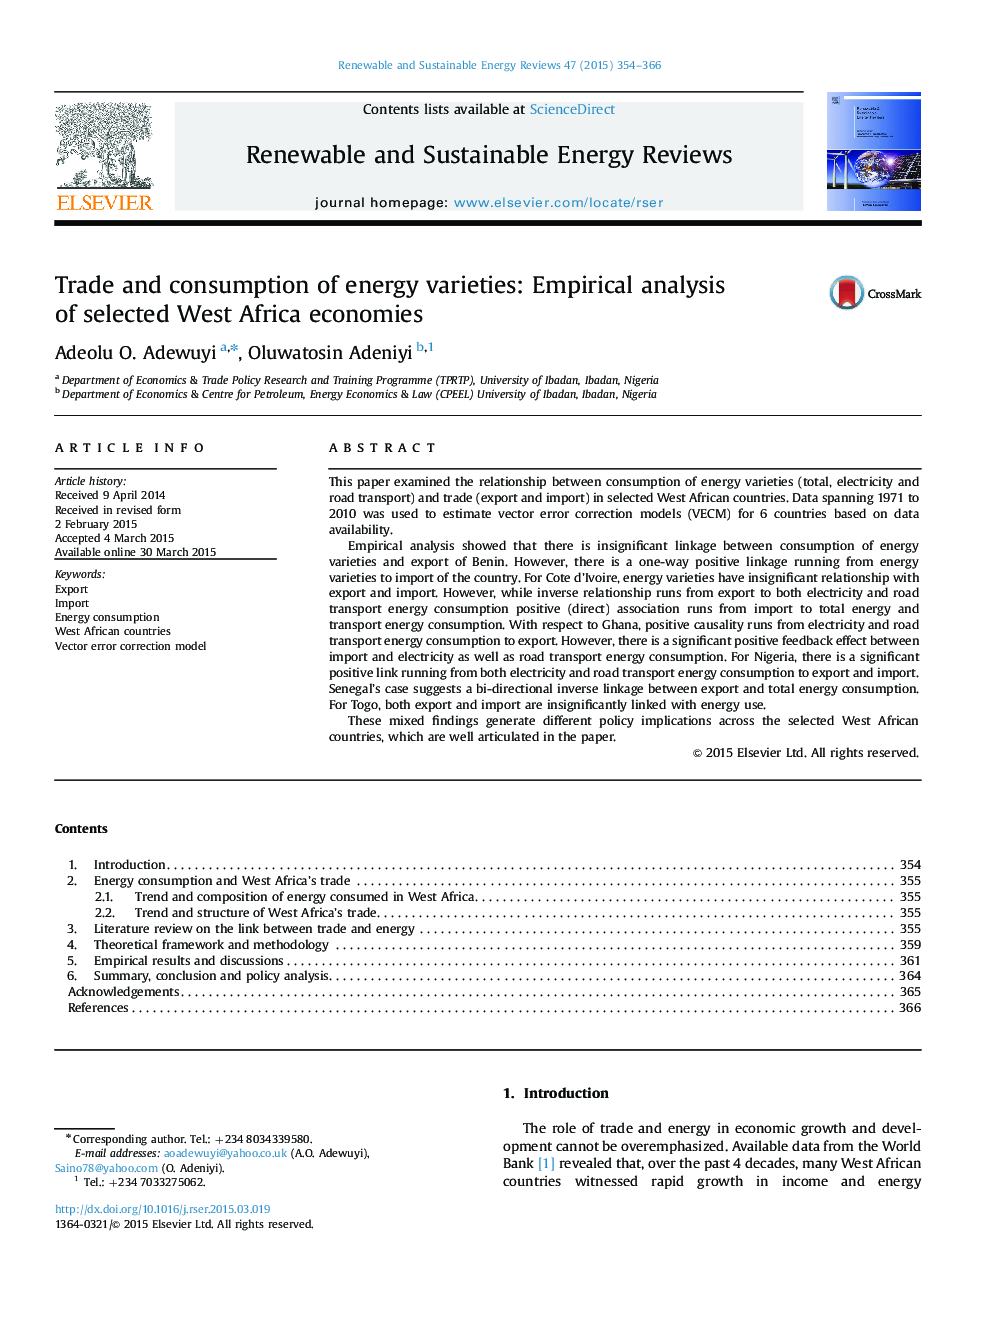 تجارت و مصرف انواع انرژی: تحلیل تجربی از اقتصادهای انتخاب شده در غرب آفریقا 